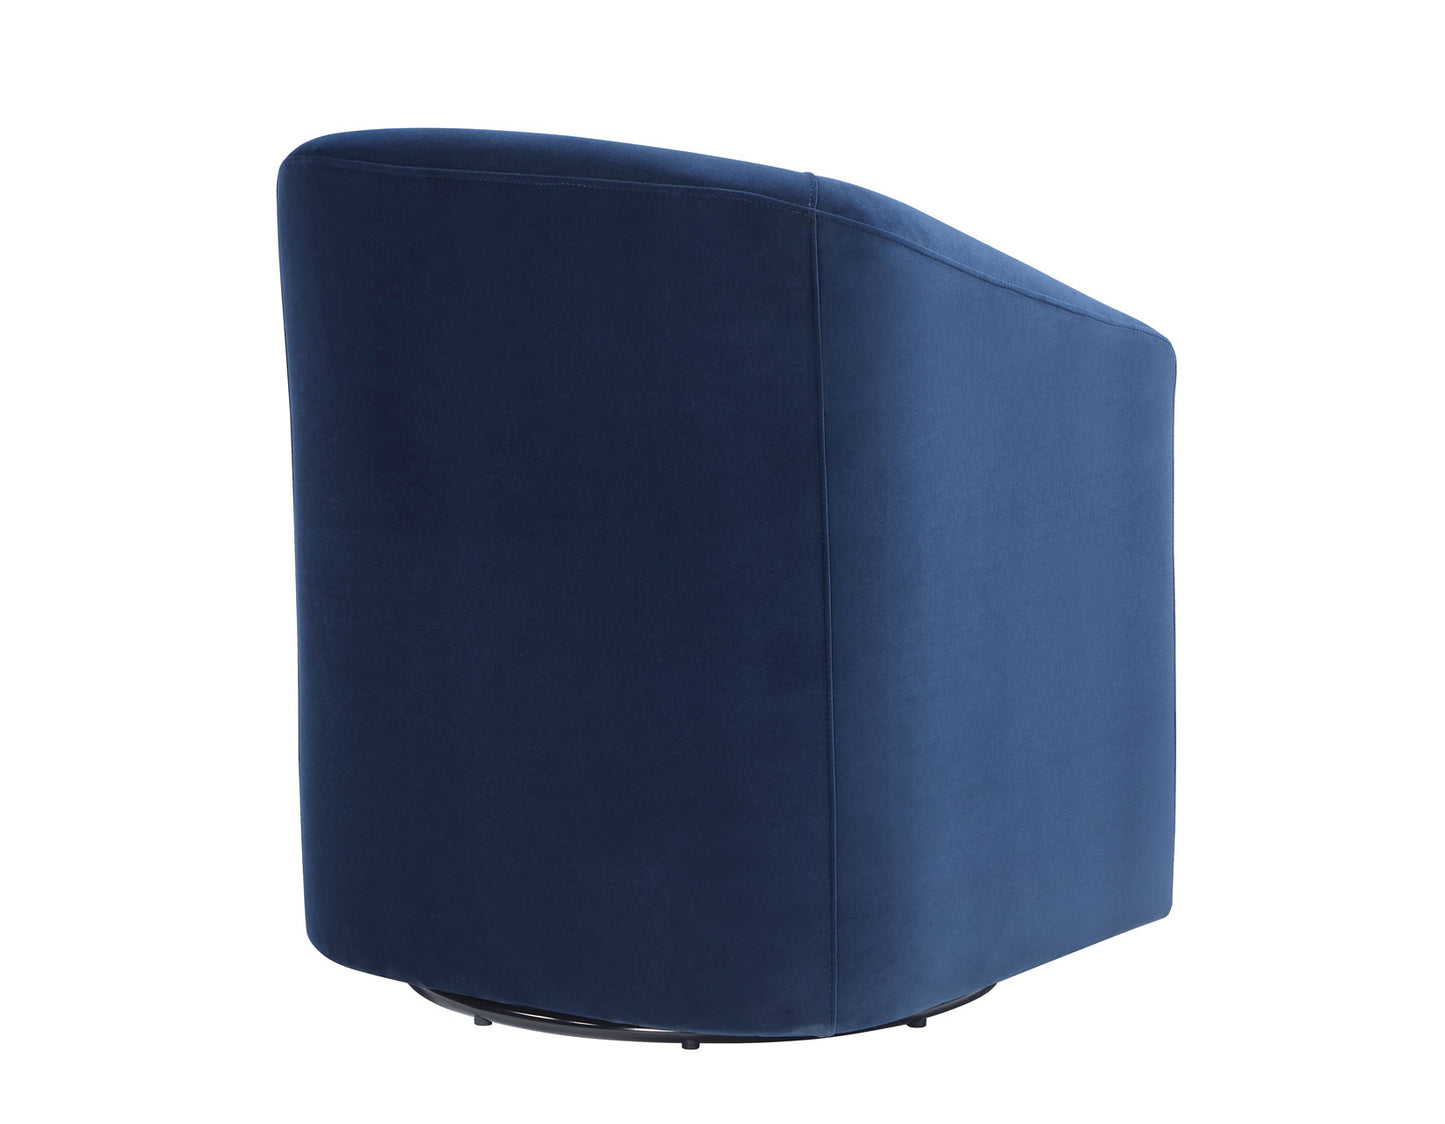 Arlo Upholstered Swivel Barrel Chair, Indigo Velvet